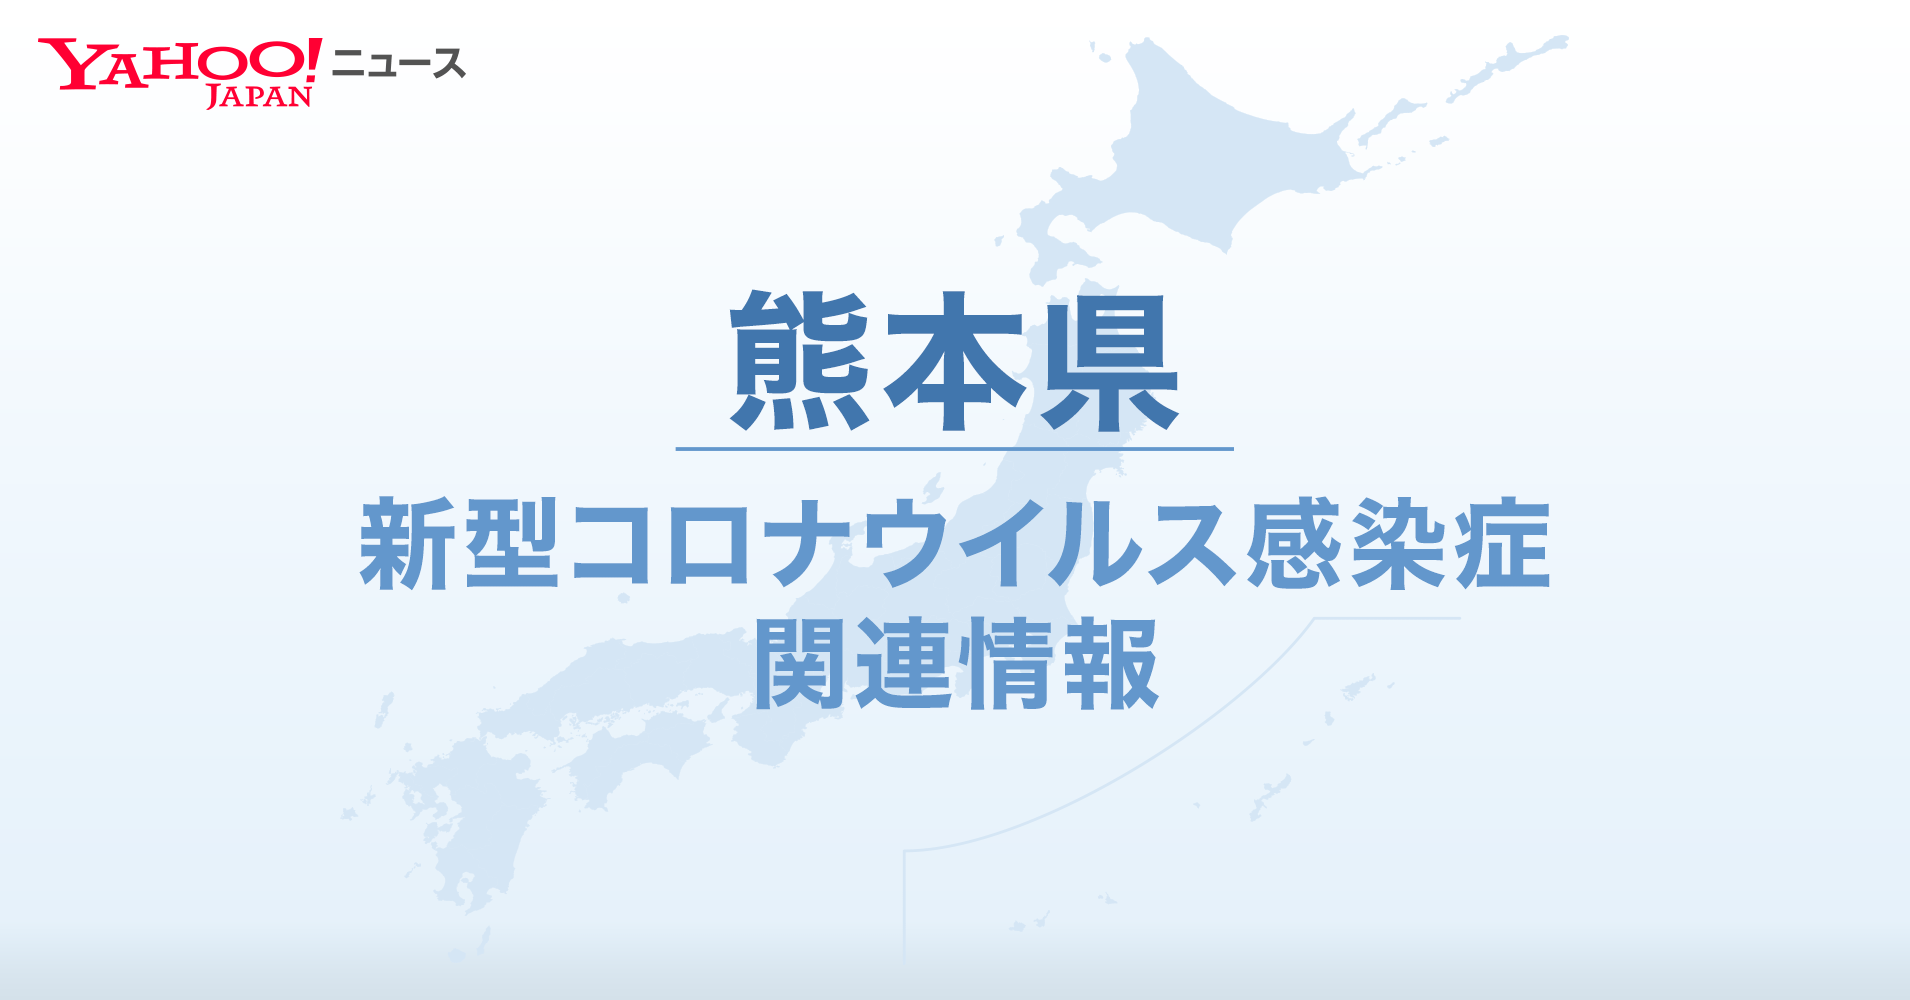 県 コロナ 熊本 ホームページ 新型コロナワクチンに関するホームページ・相談窓口